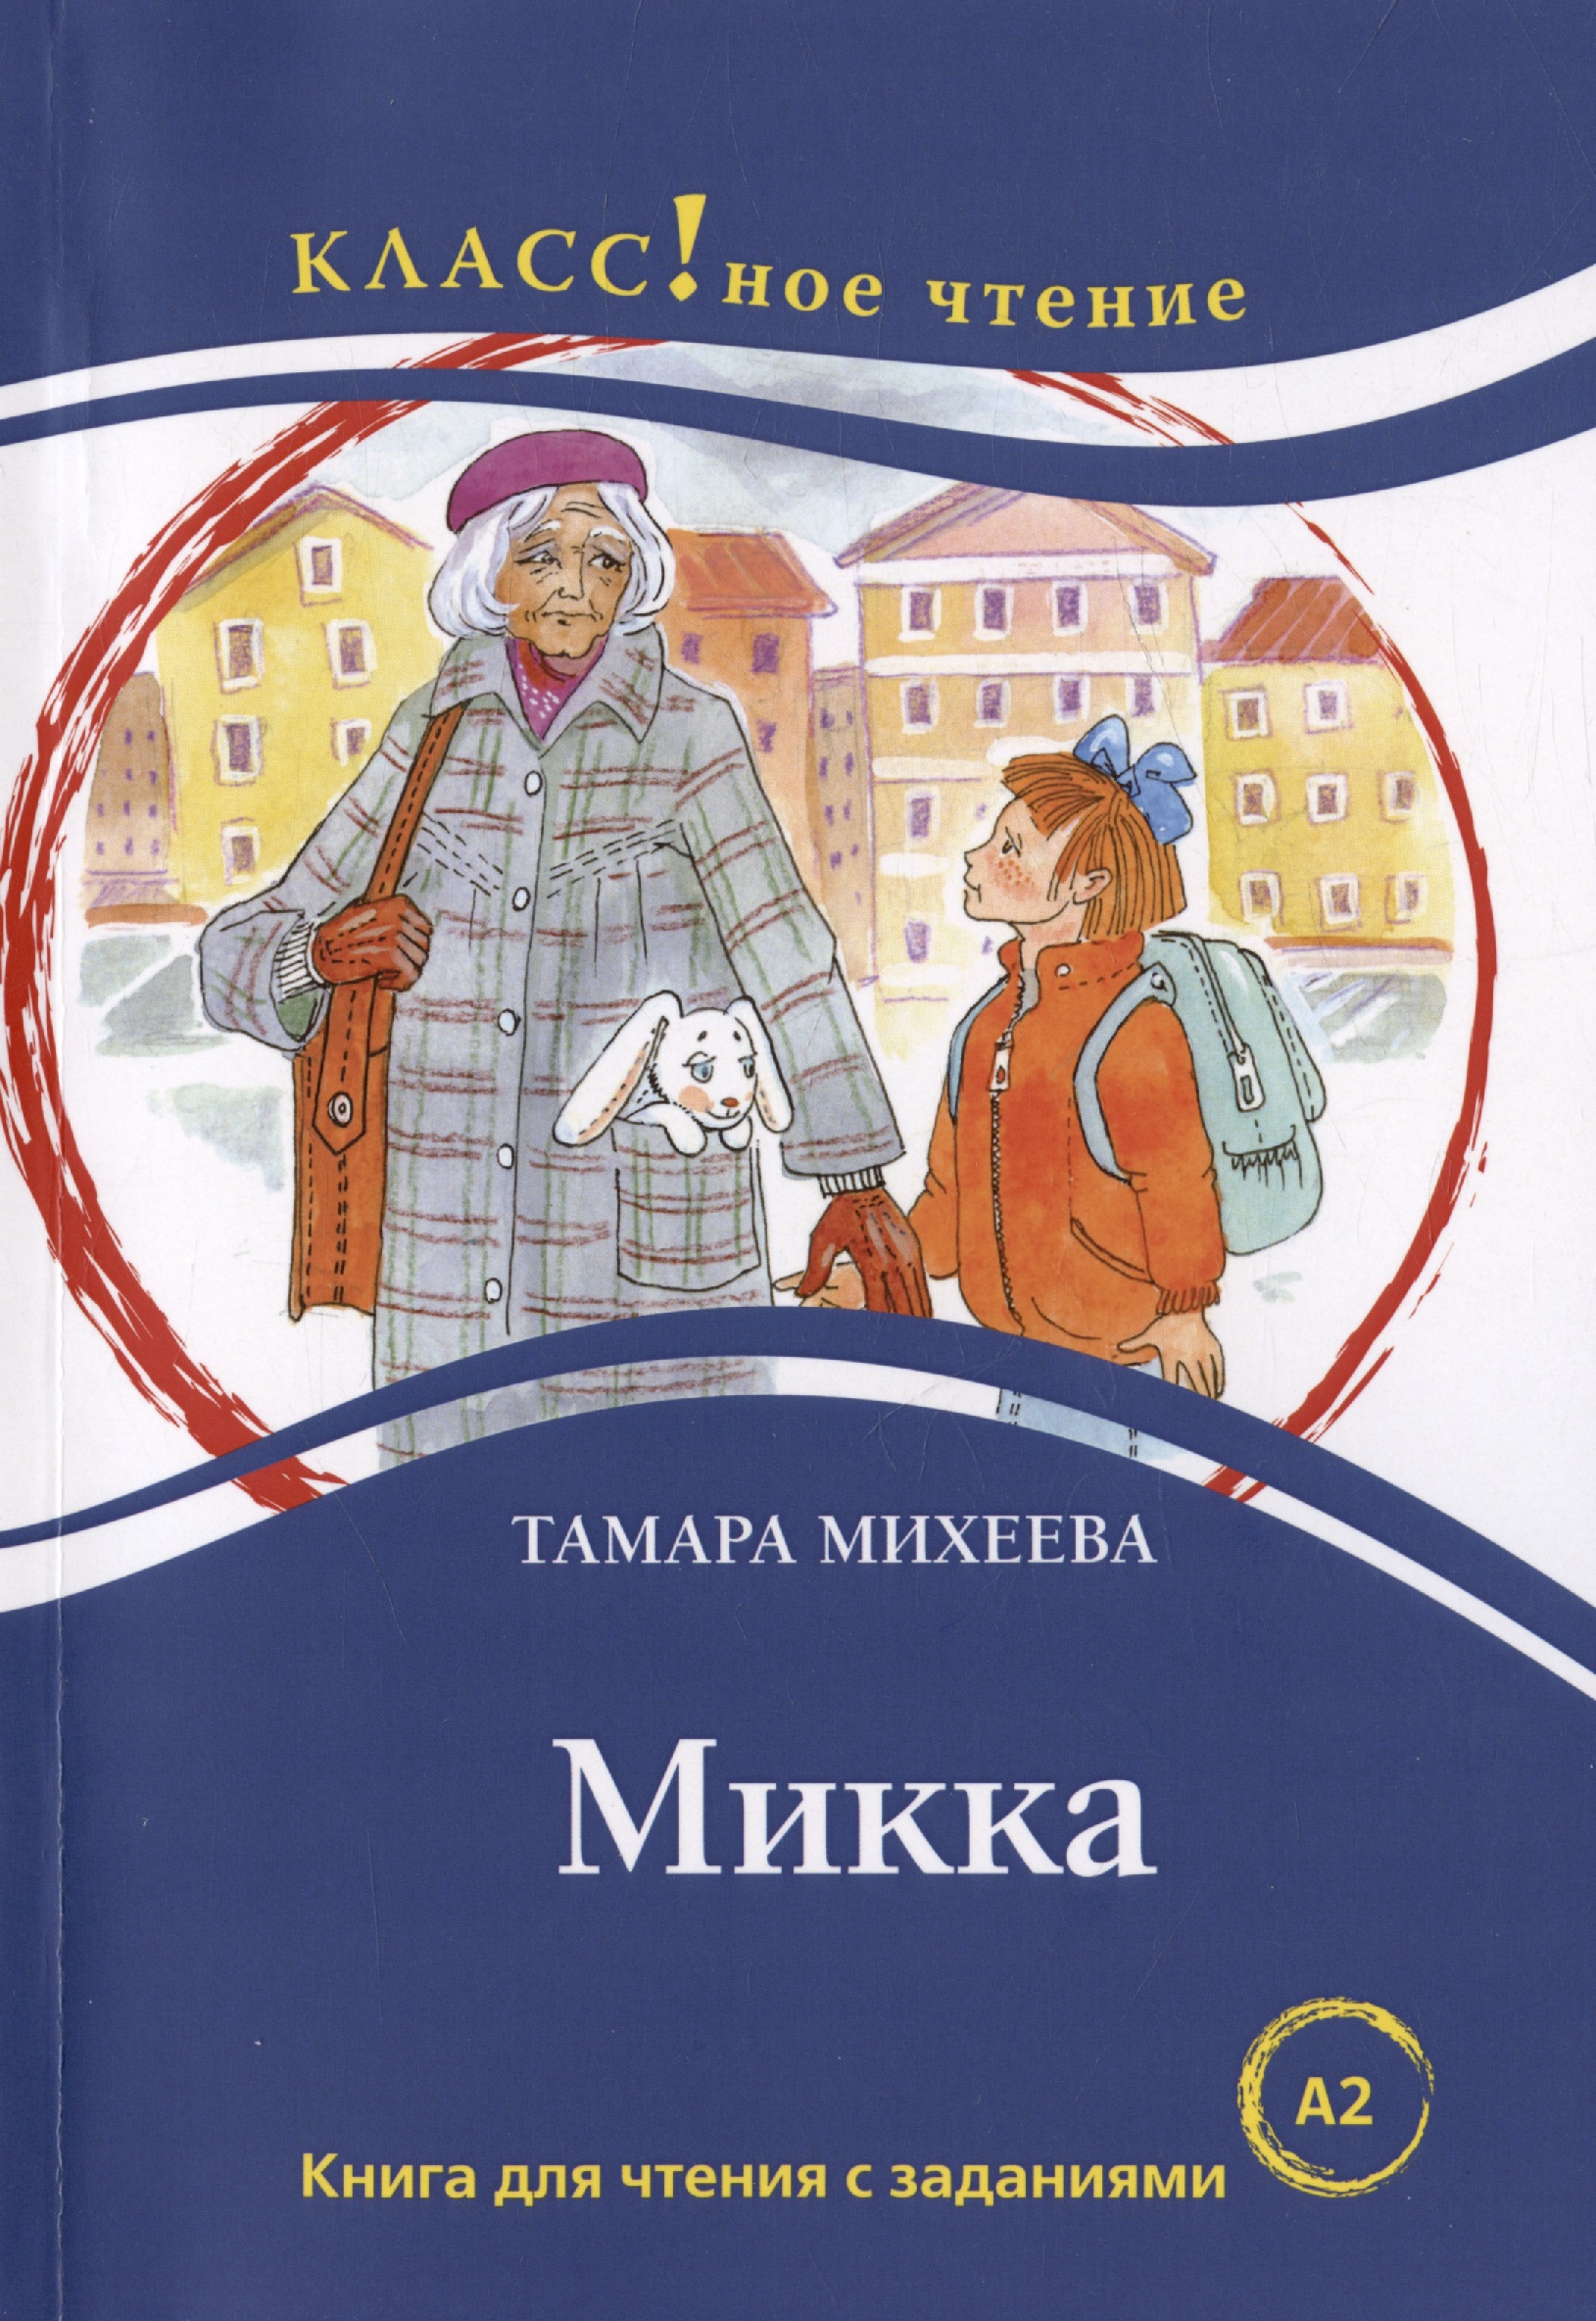 Микка. Книга для чтения с заданиями для изучающих русский язык как иностранный А2